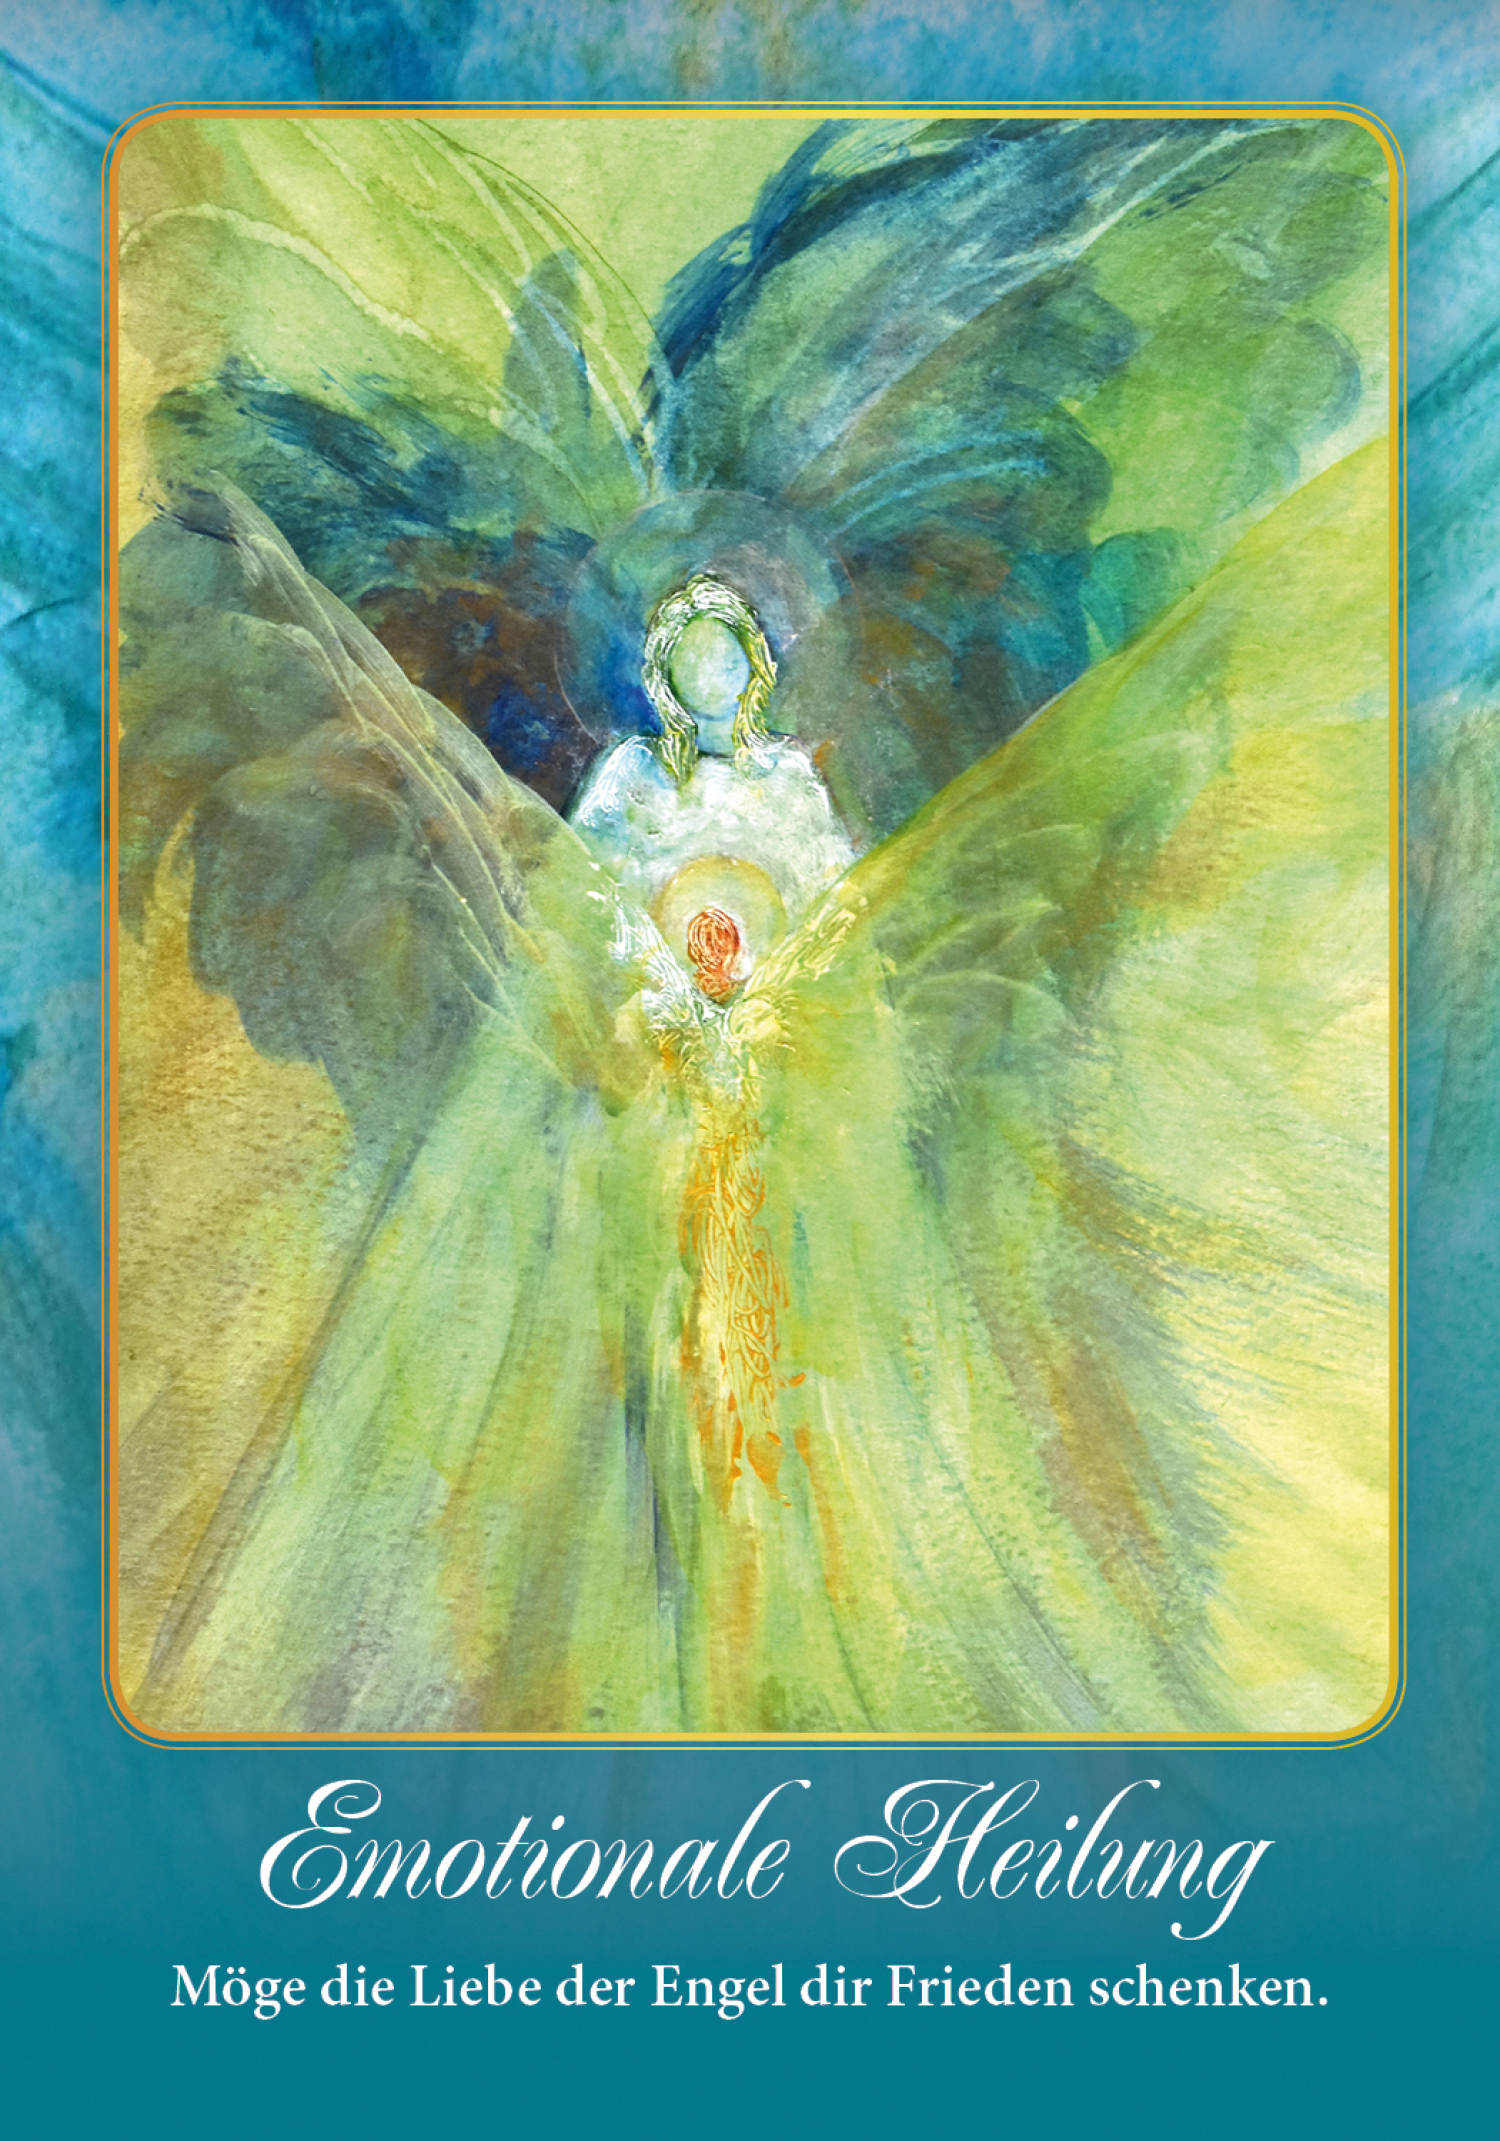 Engel-Orakel der Goldenen Zeit (Kartenset), Produktbild 3